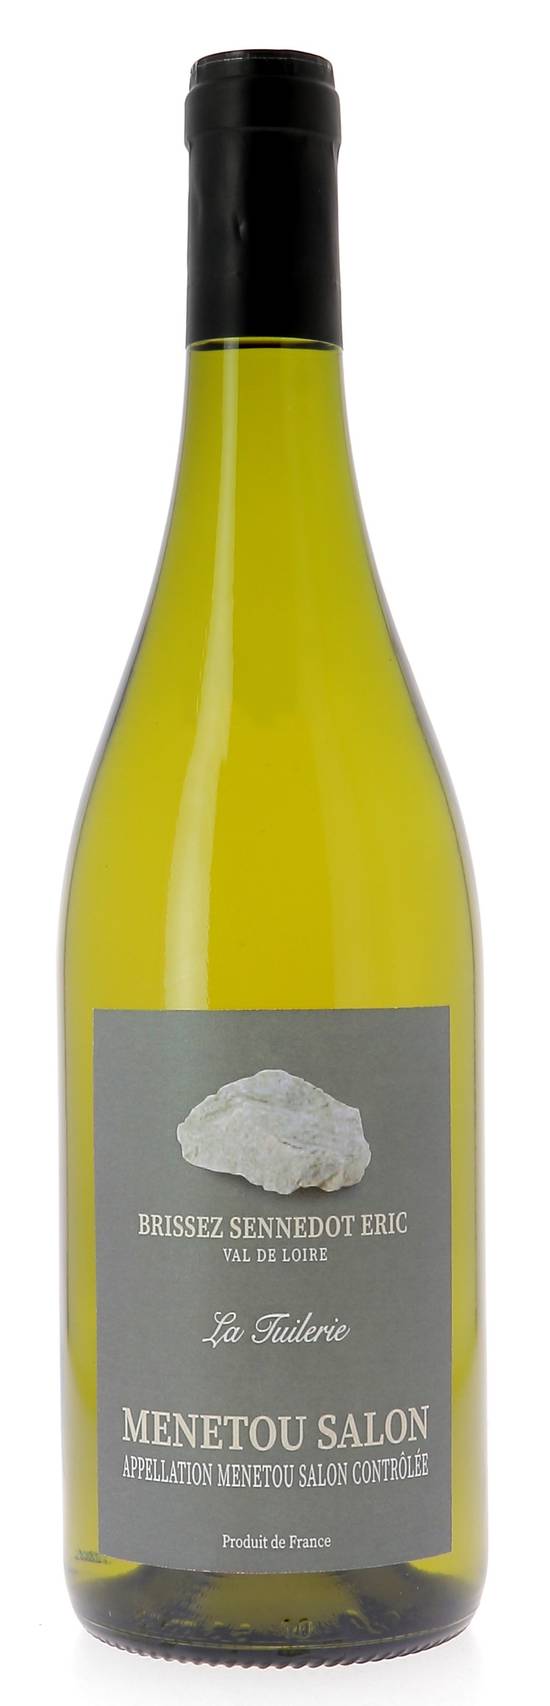 Menetou Salon - Vin blanc domaine du manay les jacquelins (750 ml)